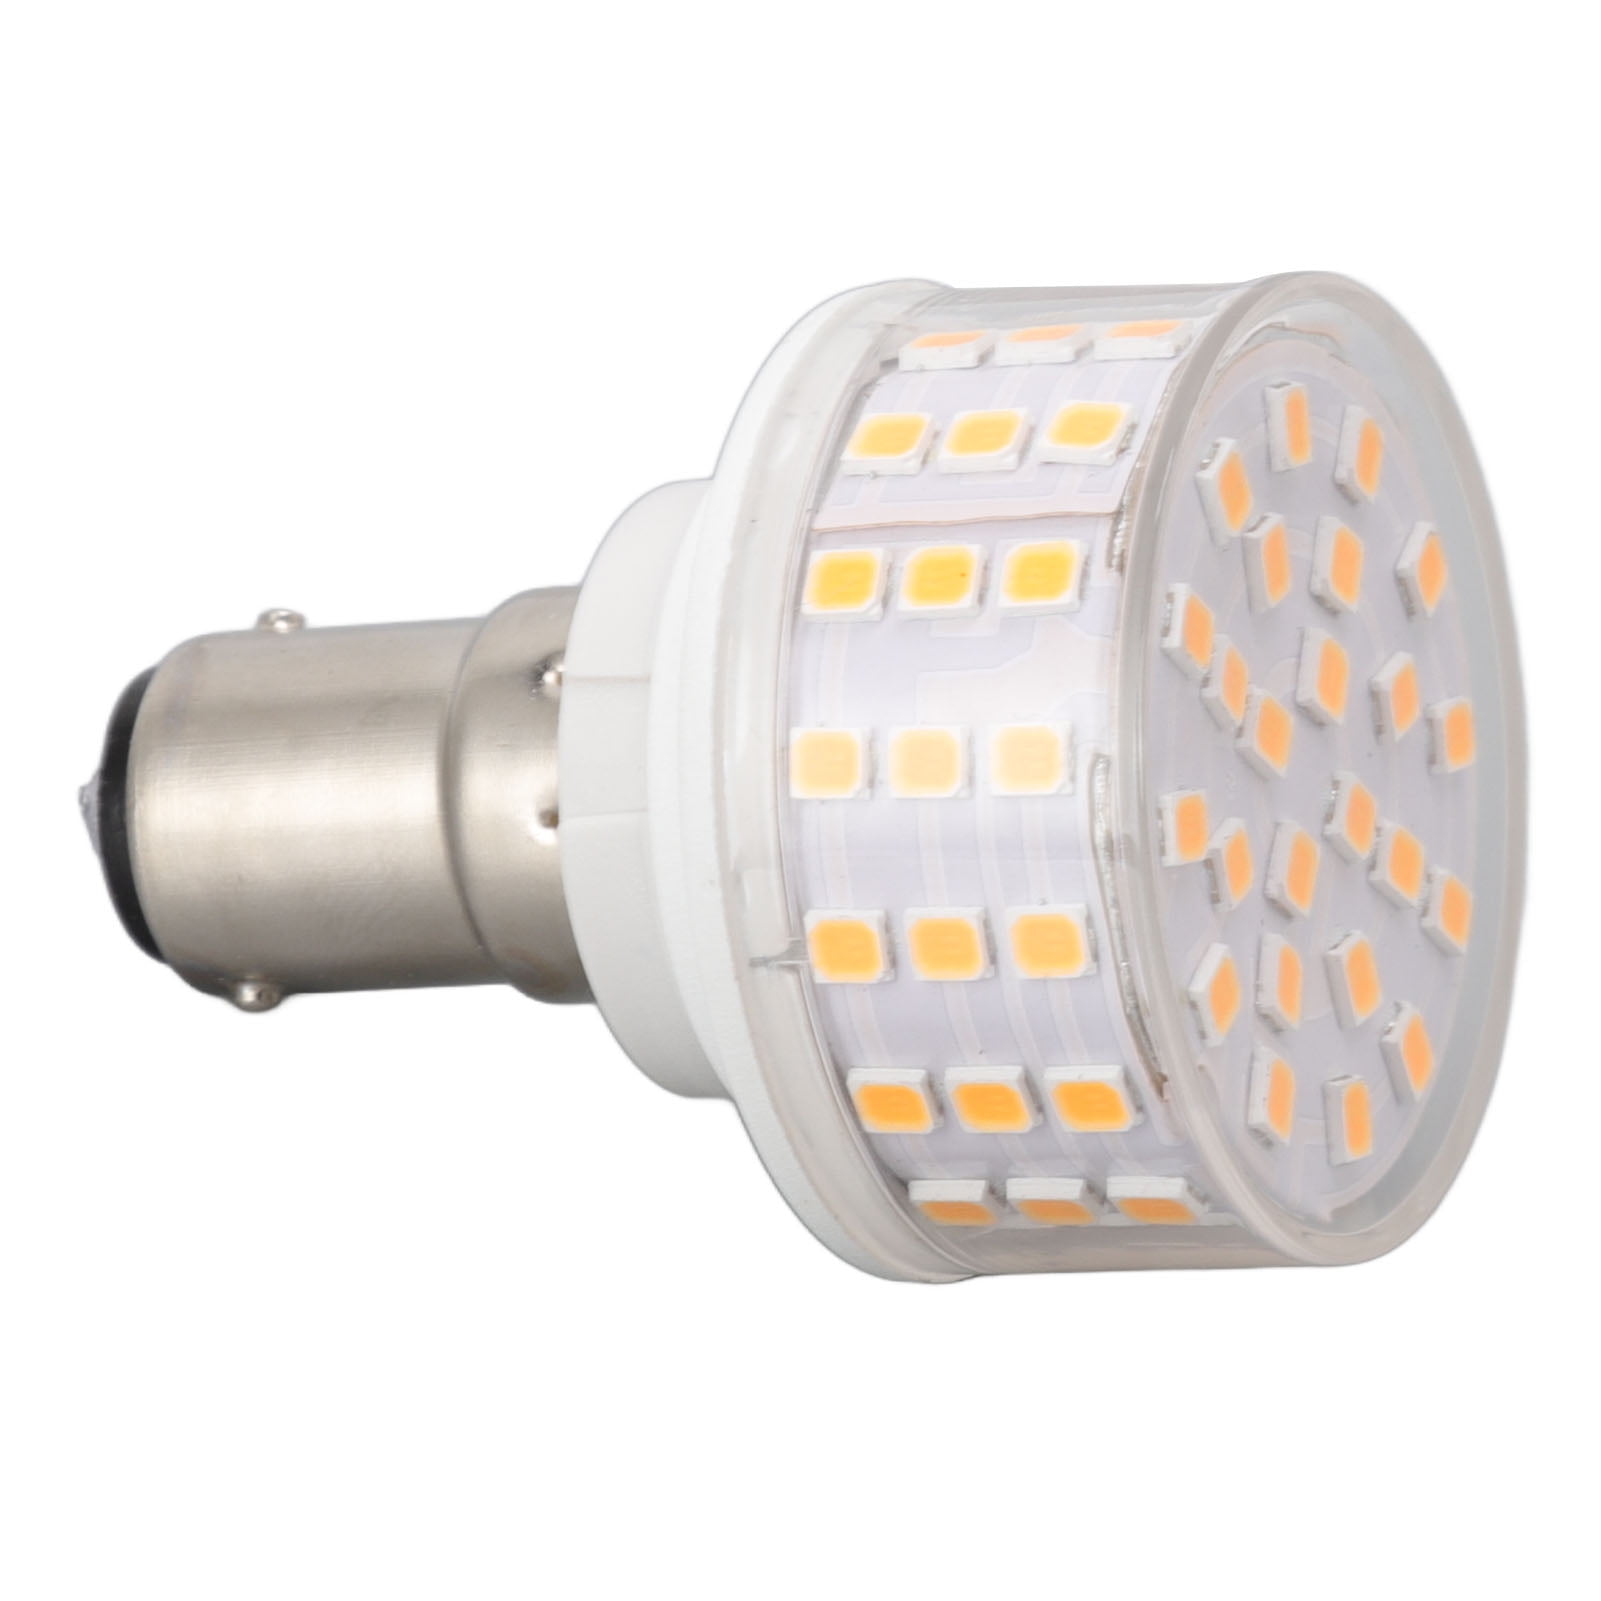 LED Bulb, B15 Lamp High 85-265V Flicker Free For Corridor Light,White - Walmart.com